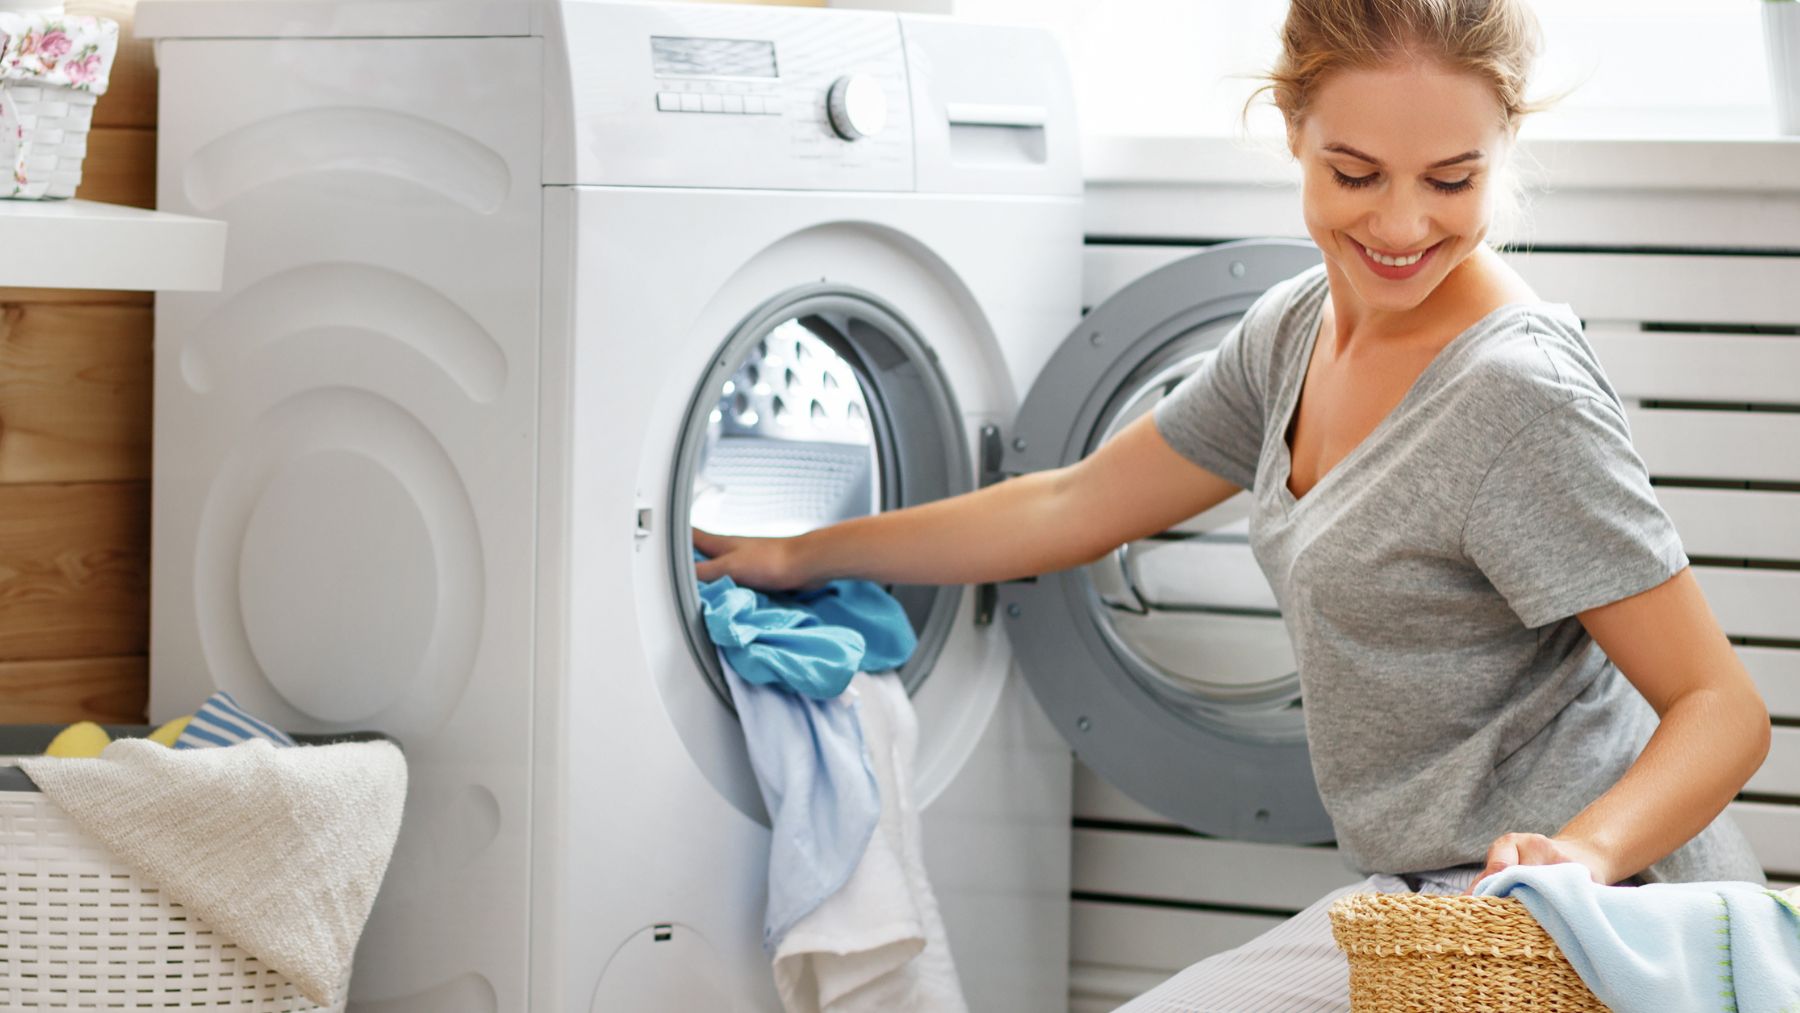 Estas bolas para la lavadora te permiten ahorrar: hacen magia con tu ropa,  secan más rápido y casi sin arrugas